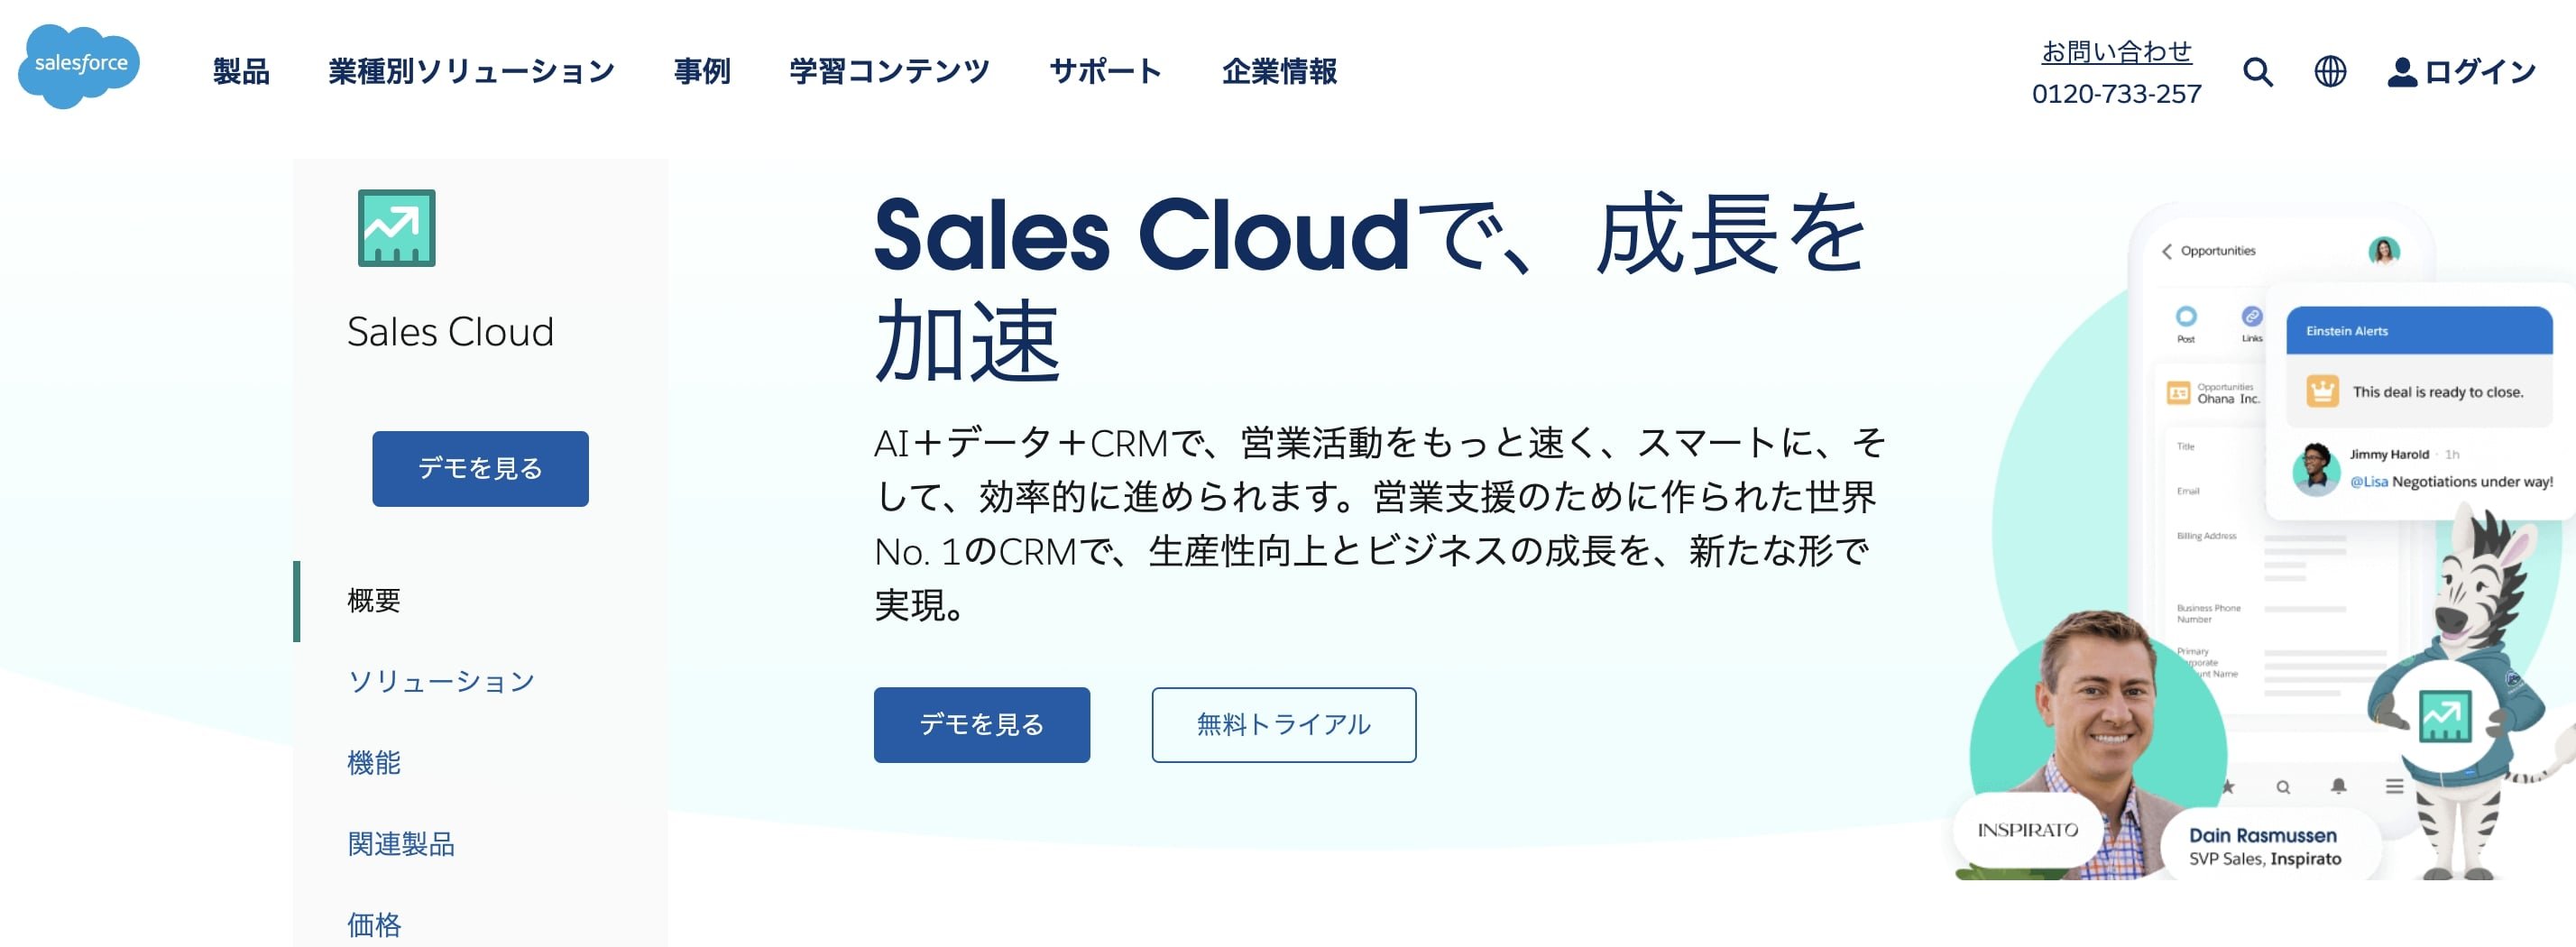 Sales Cloud 公式HP